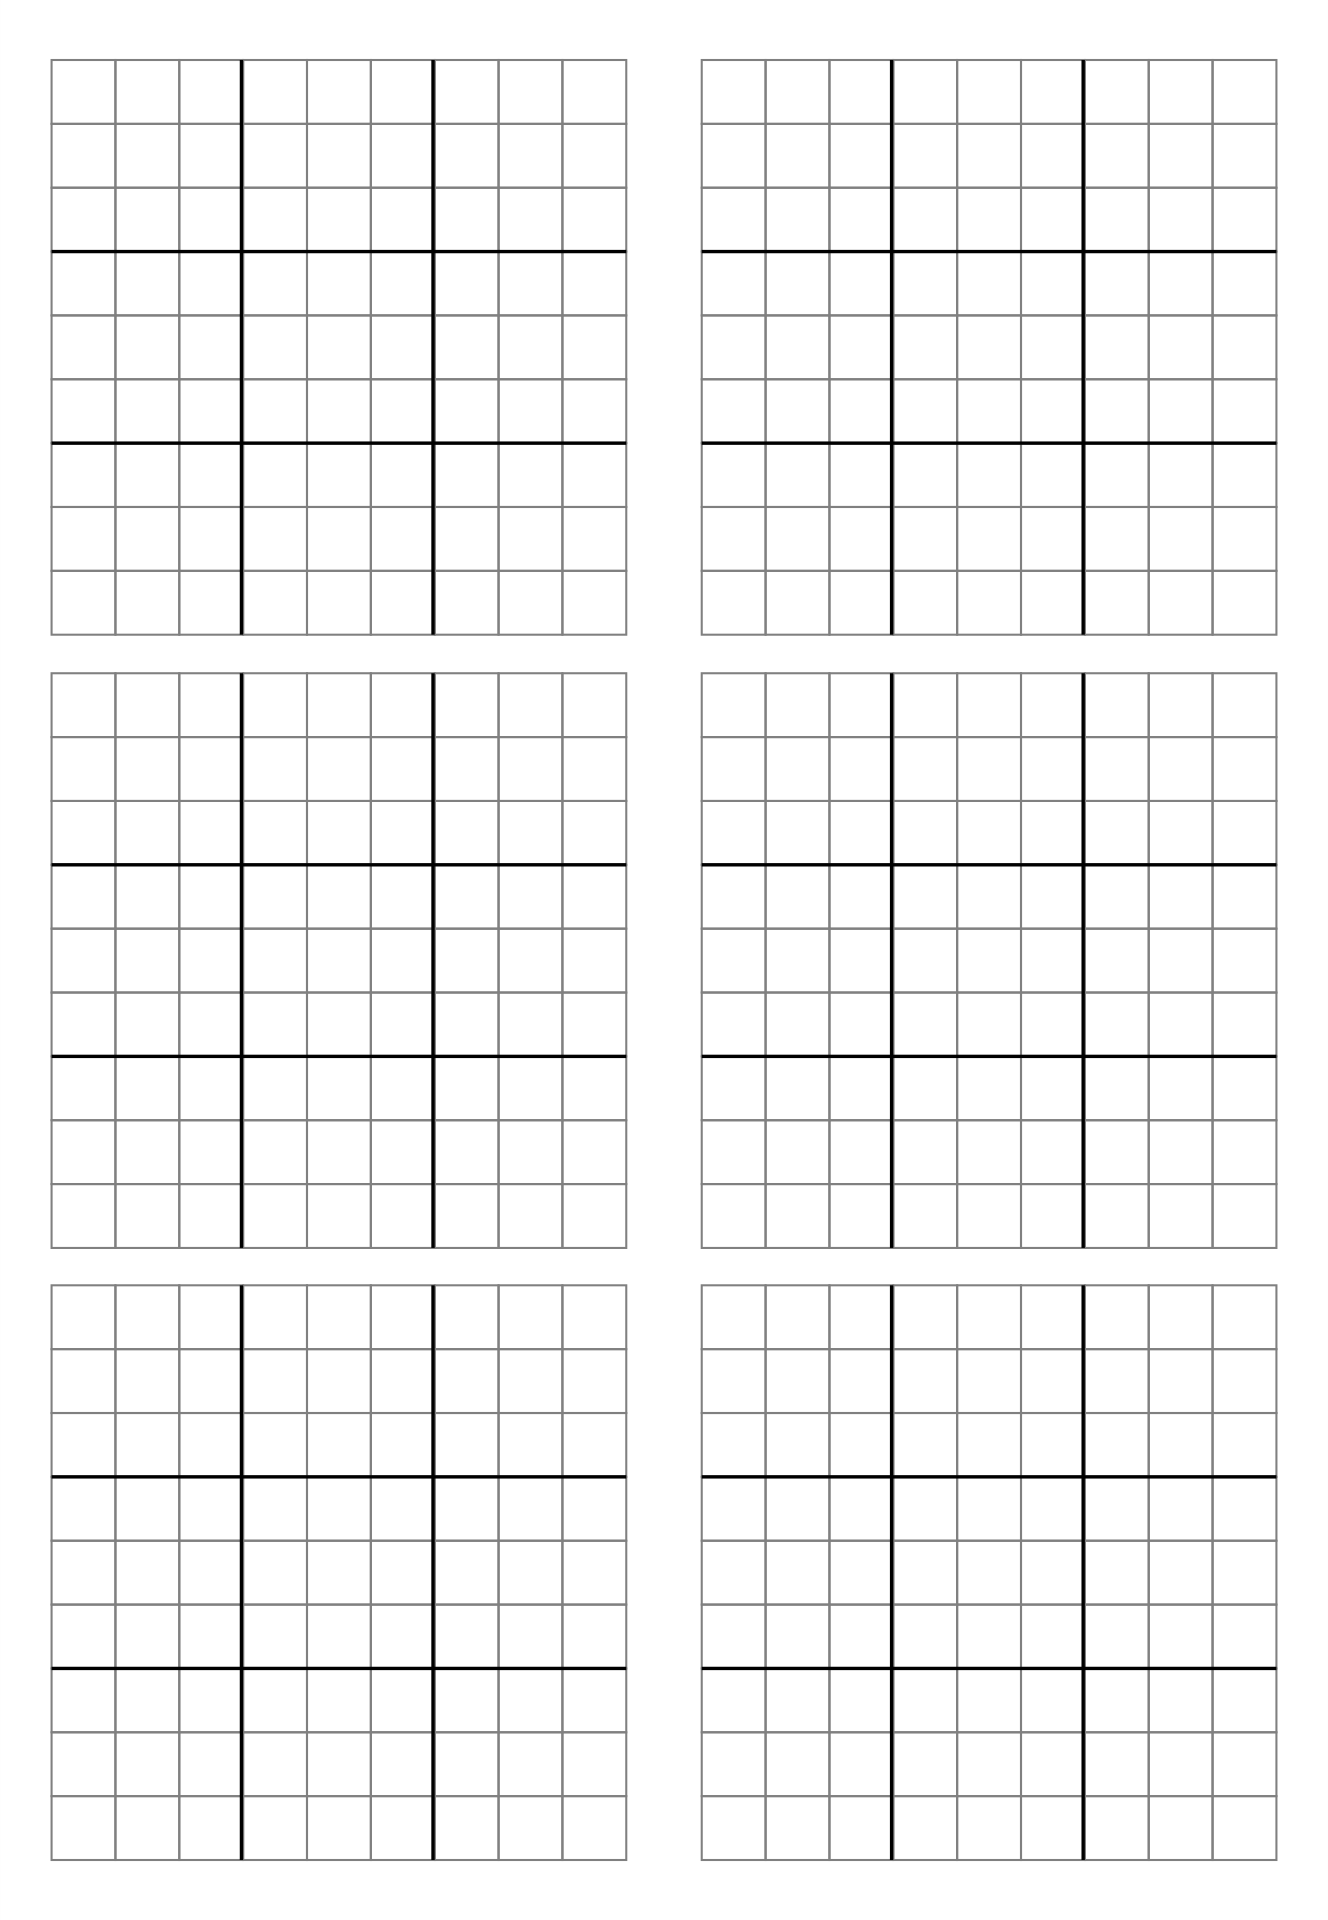 Blank Printable Sudoku Customize and Print